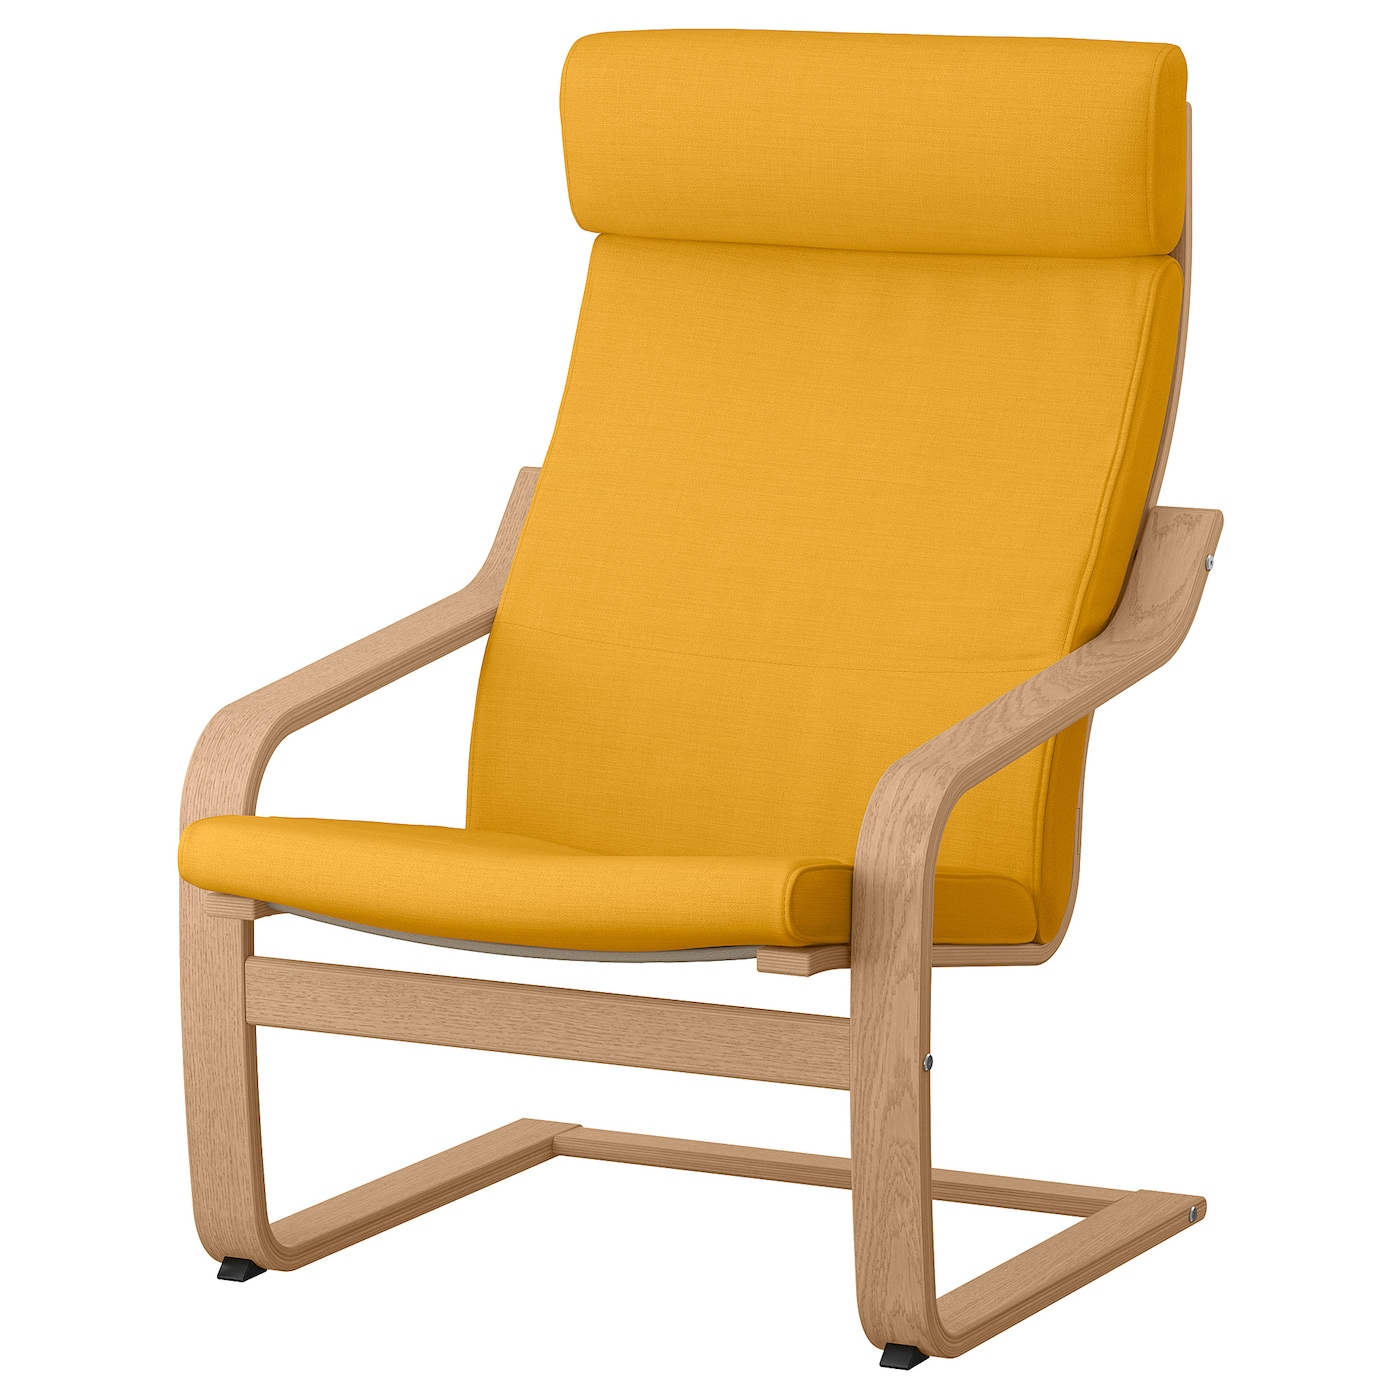 POÄNG 波昂扶手椅垫斯科特伯黄色- IKEA